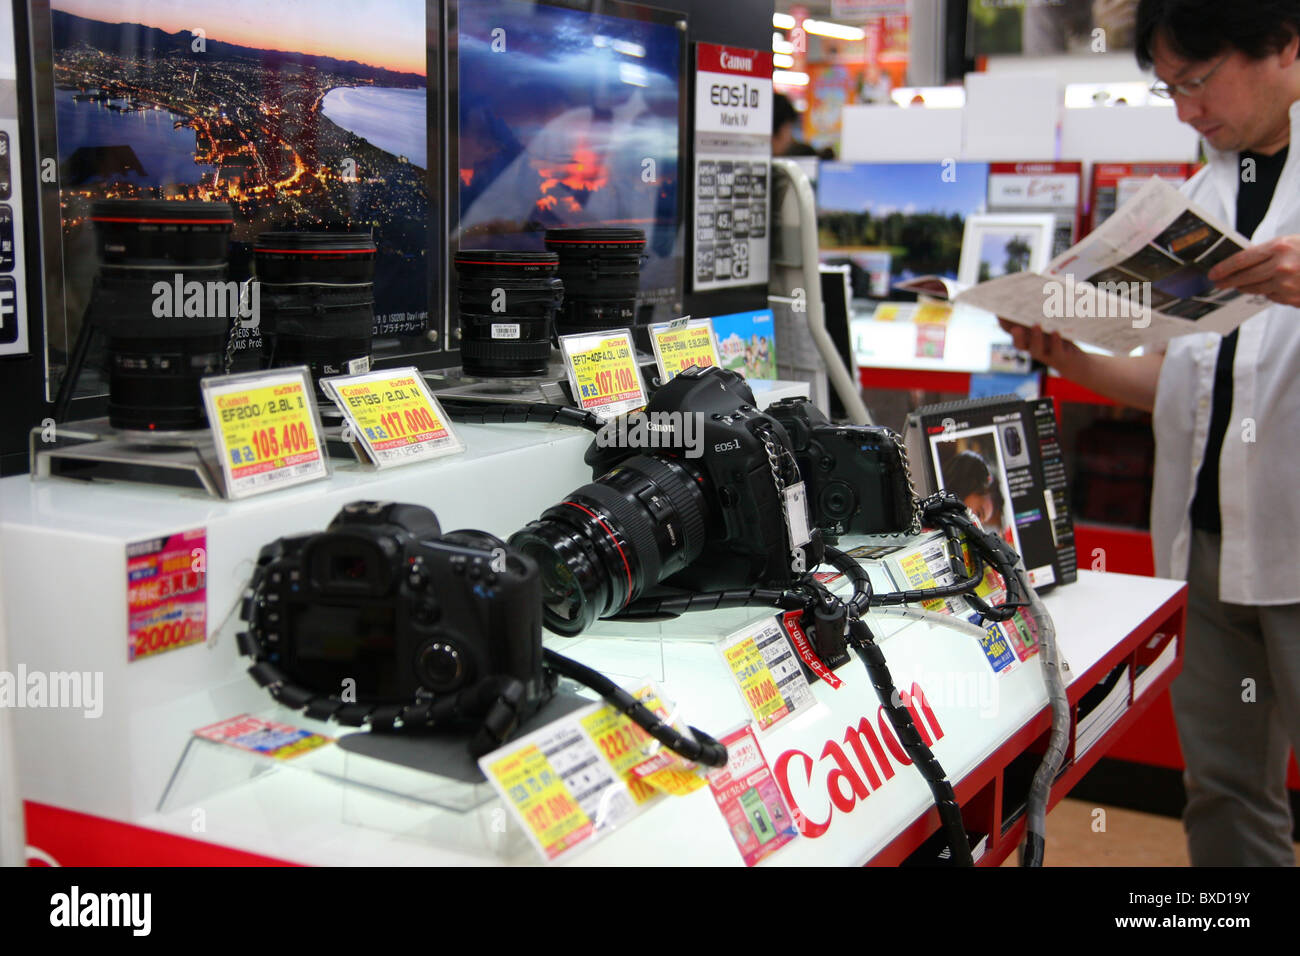 Canon Digitalkameras zu verkaufen in Bic Camera speichern in Tokyo Japan 2010 Stockfoto